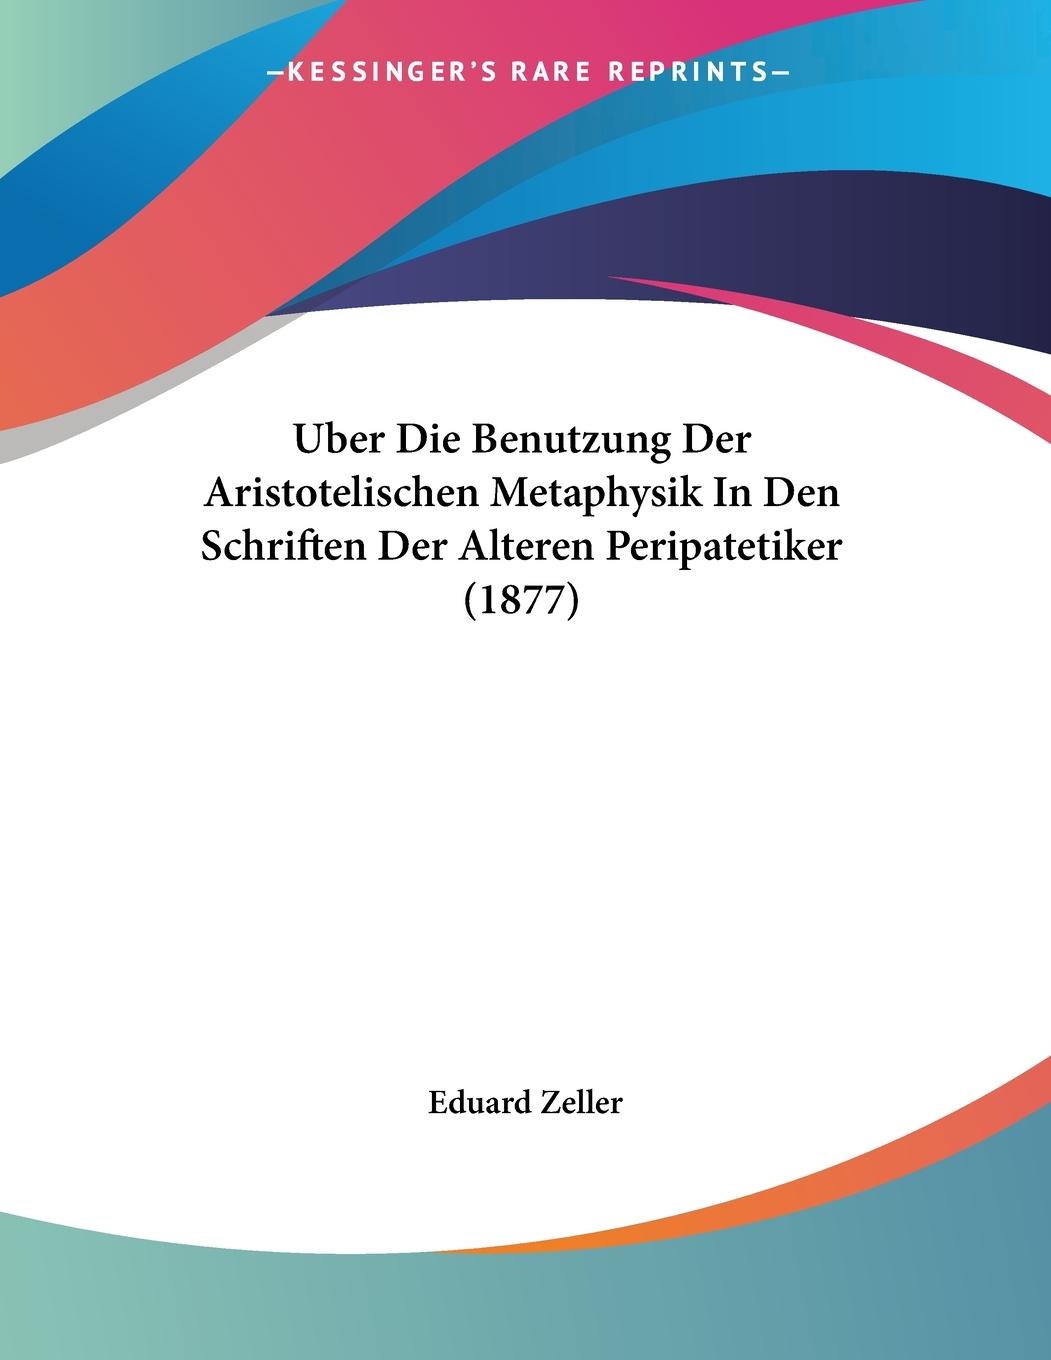 Uber Die Benutzung Der Aristotelischen Metaphysik In Den Schriften Der Alteren Peripatetiker (1877) - Zeller, Eduard